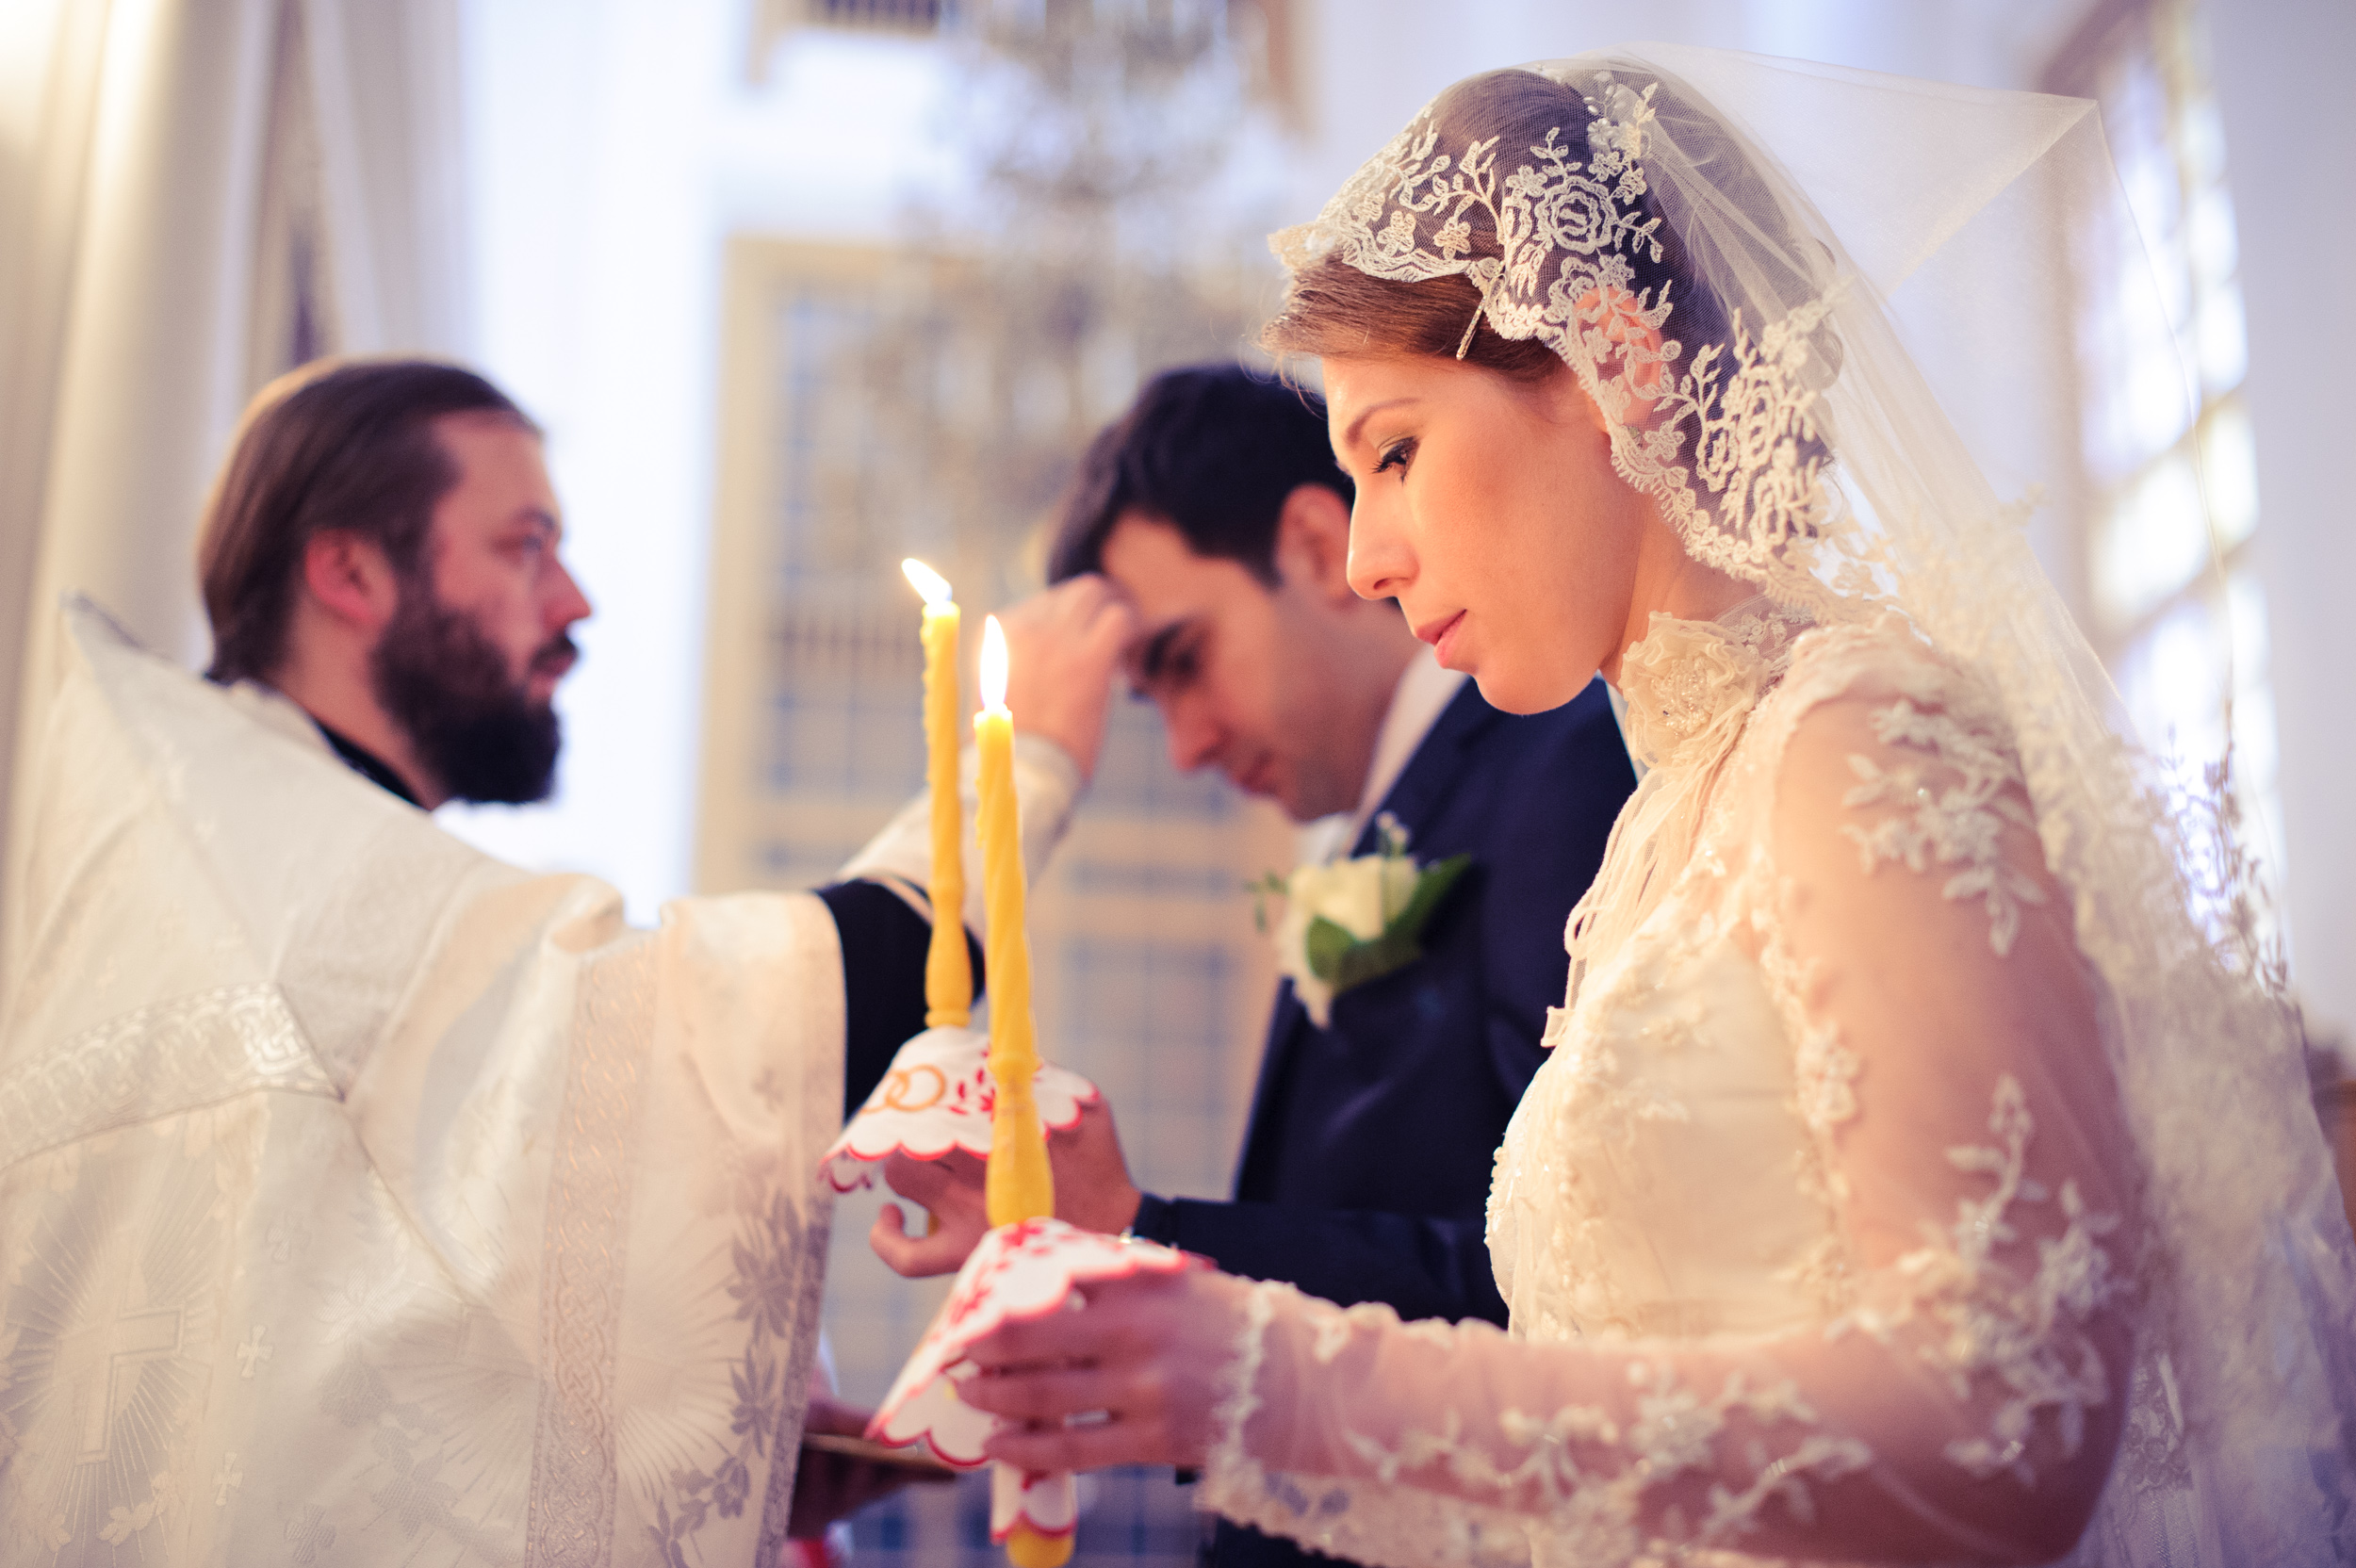 Как должны жить люди в христианском браке. Христианская семья венчание. Таинство венчания в православной церкви. Свадьба в церкви. Церемония венчания в церкви.